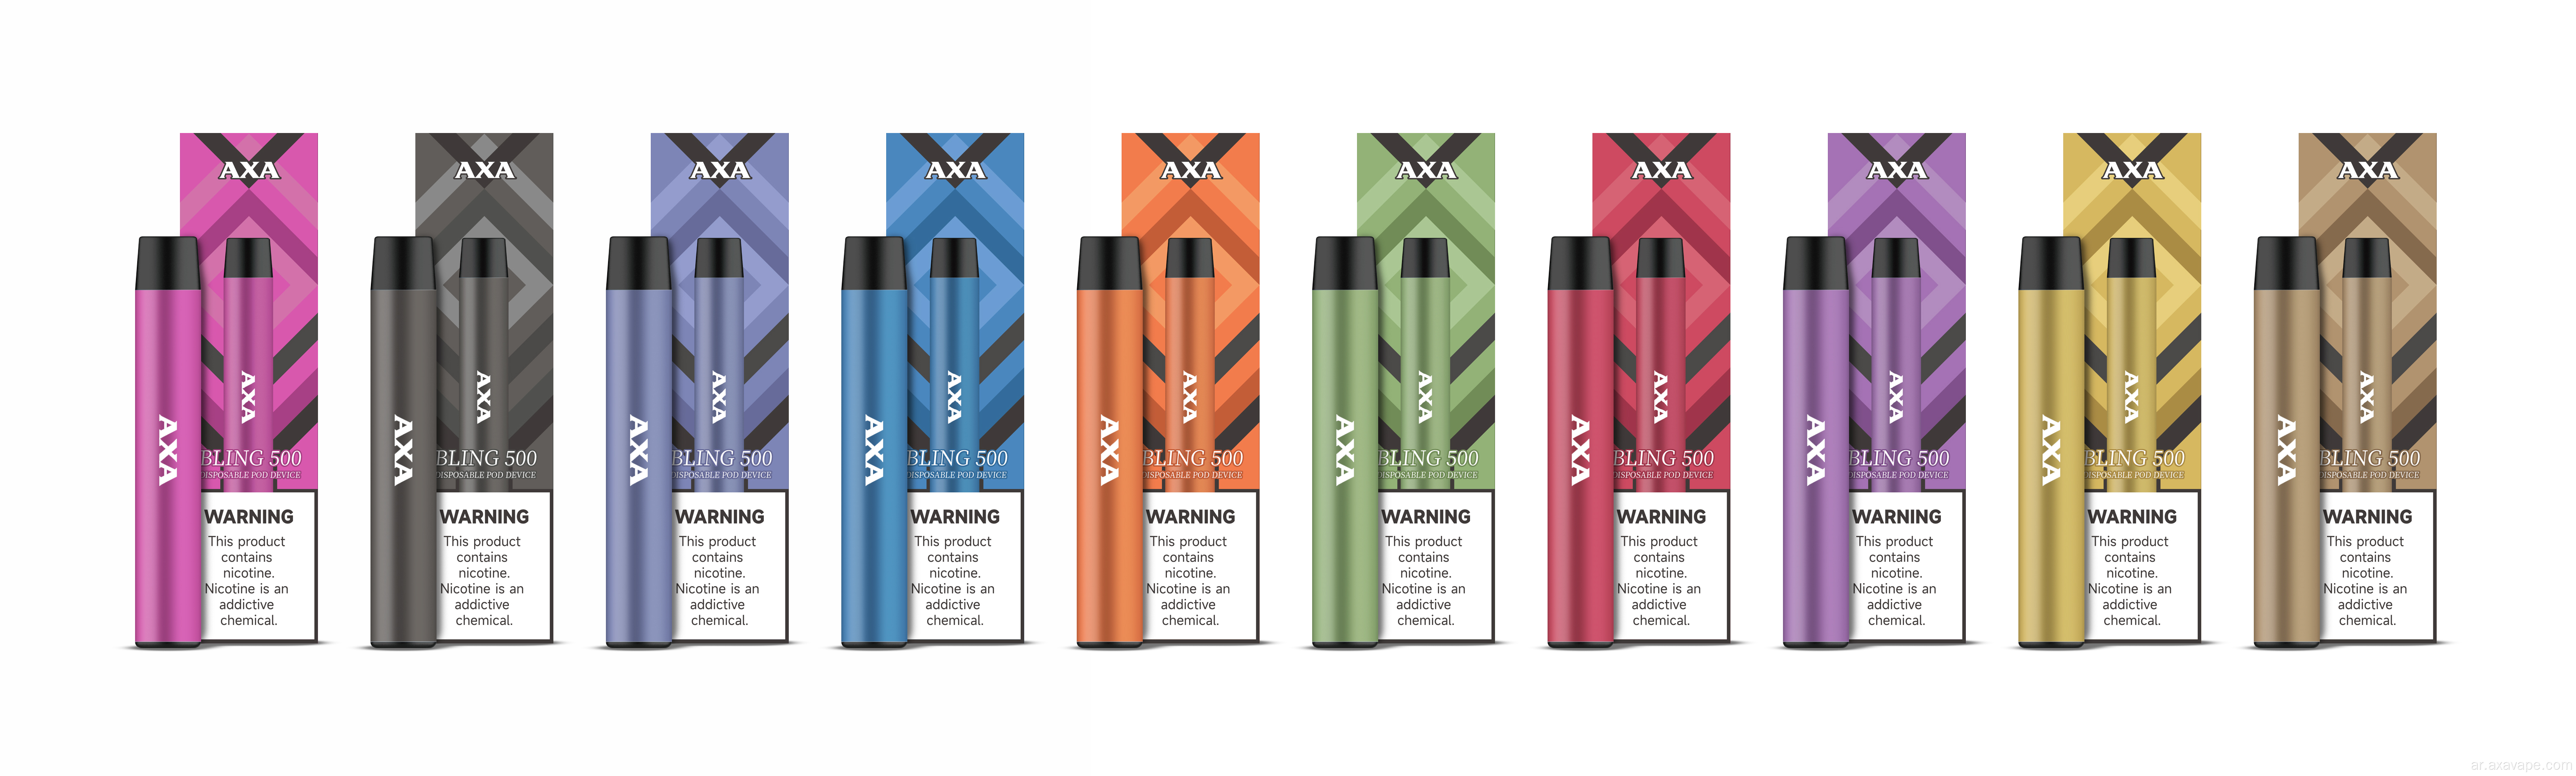 جديد Come E-Sigarette -Coulder Amber Serial-All Sets